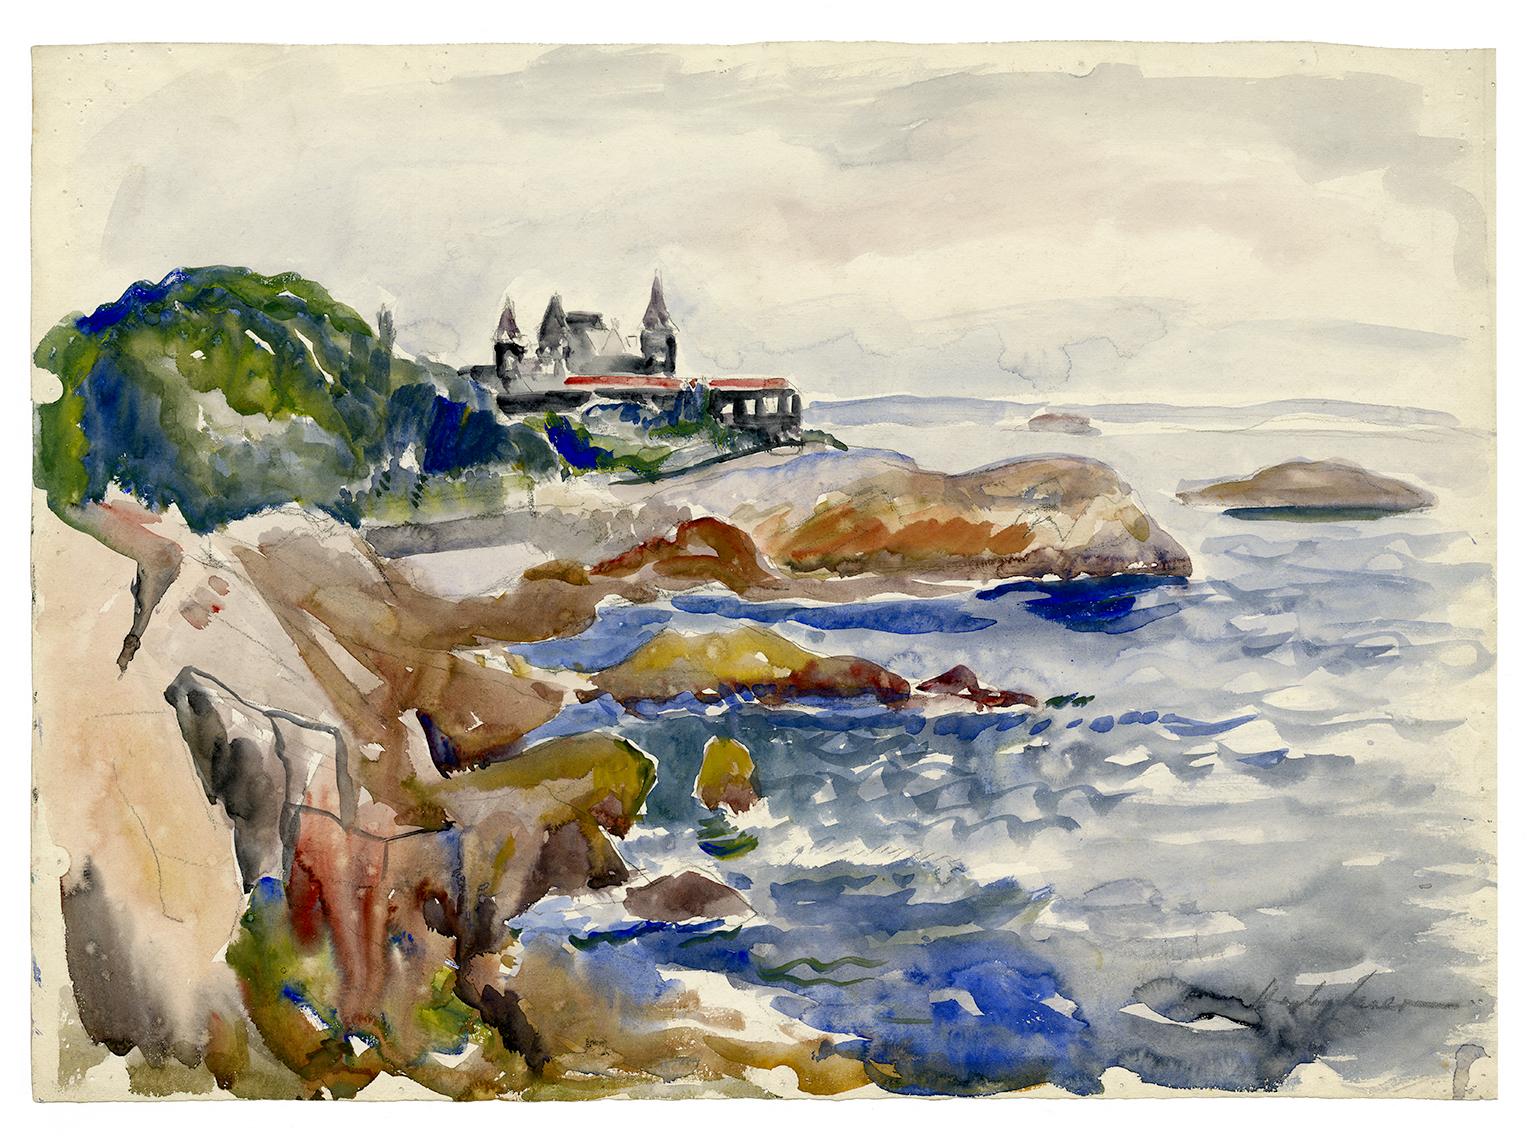 Corinthian Yacht Club, Marblehead, Mass' - Impressionnisme de la Nouvelle-Angleterre des années 1920 - Art de Hayley Lever